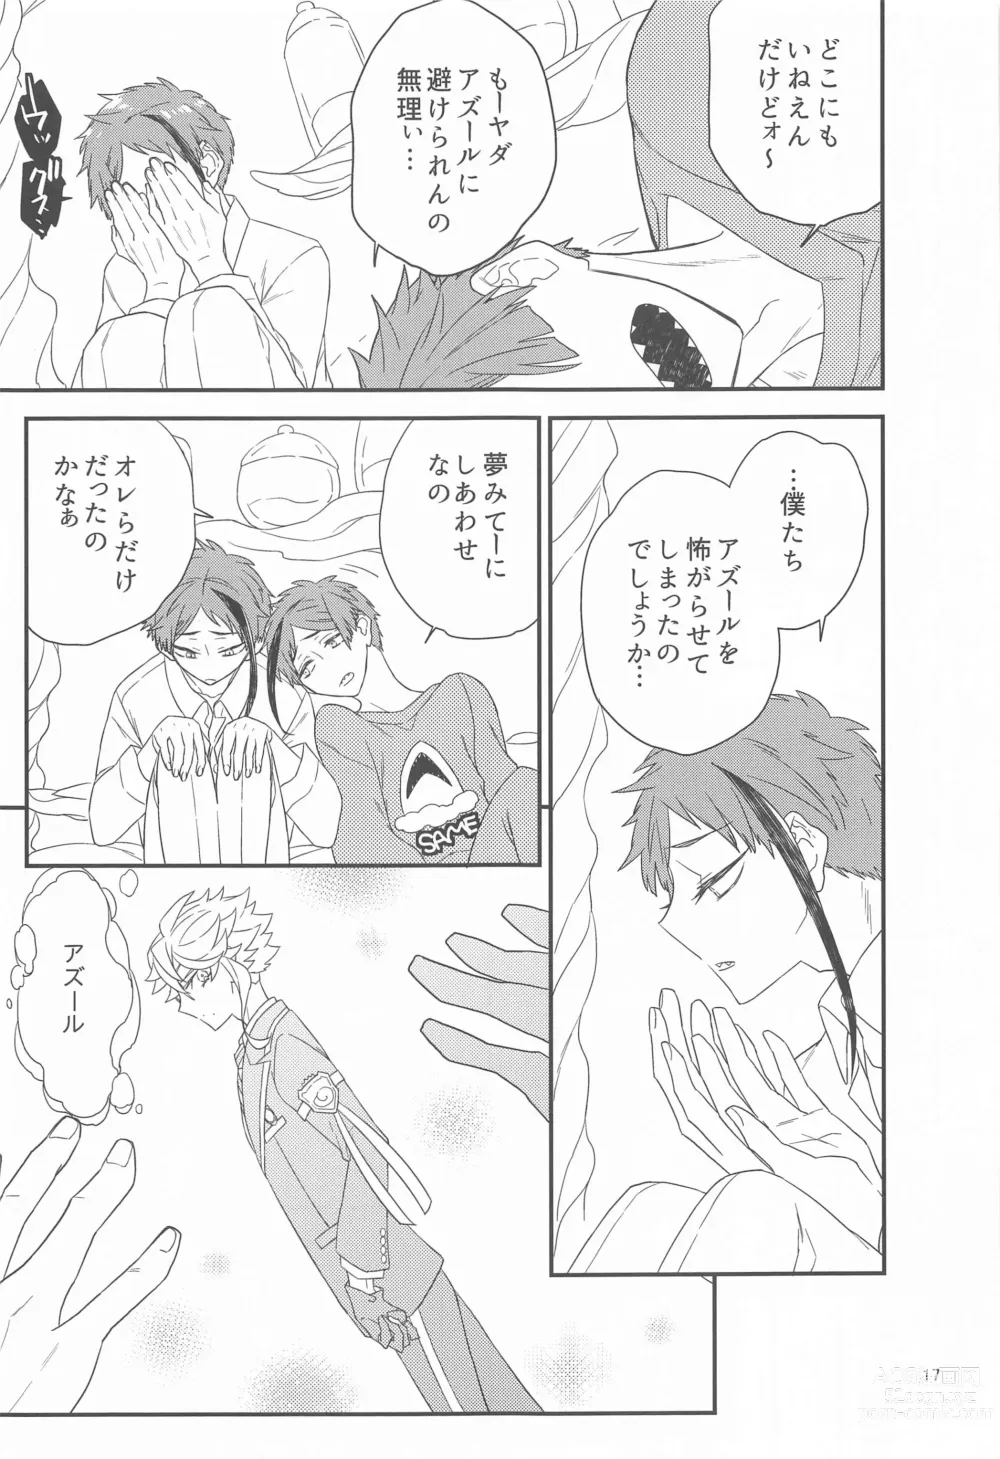 Page 16 of doujinshi Please Don’t Run Away!